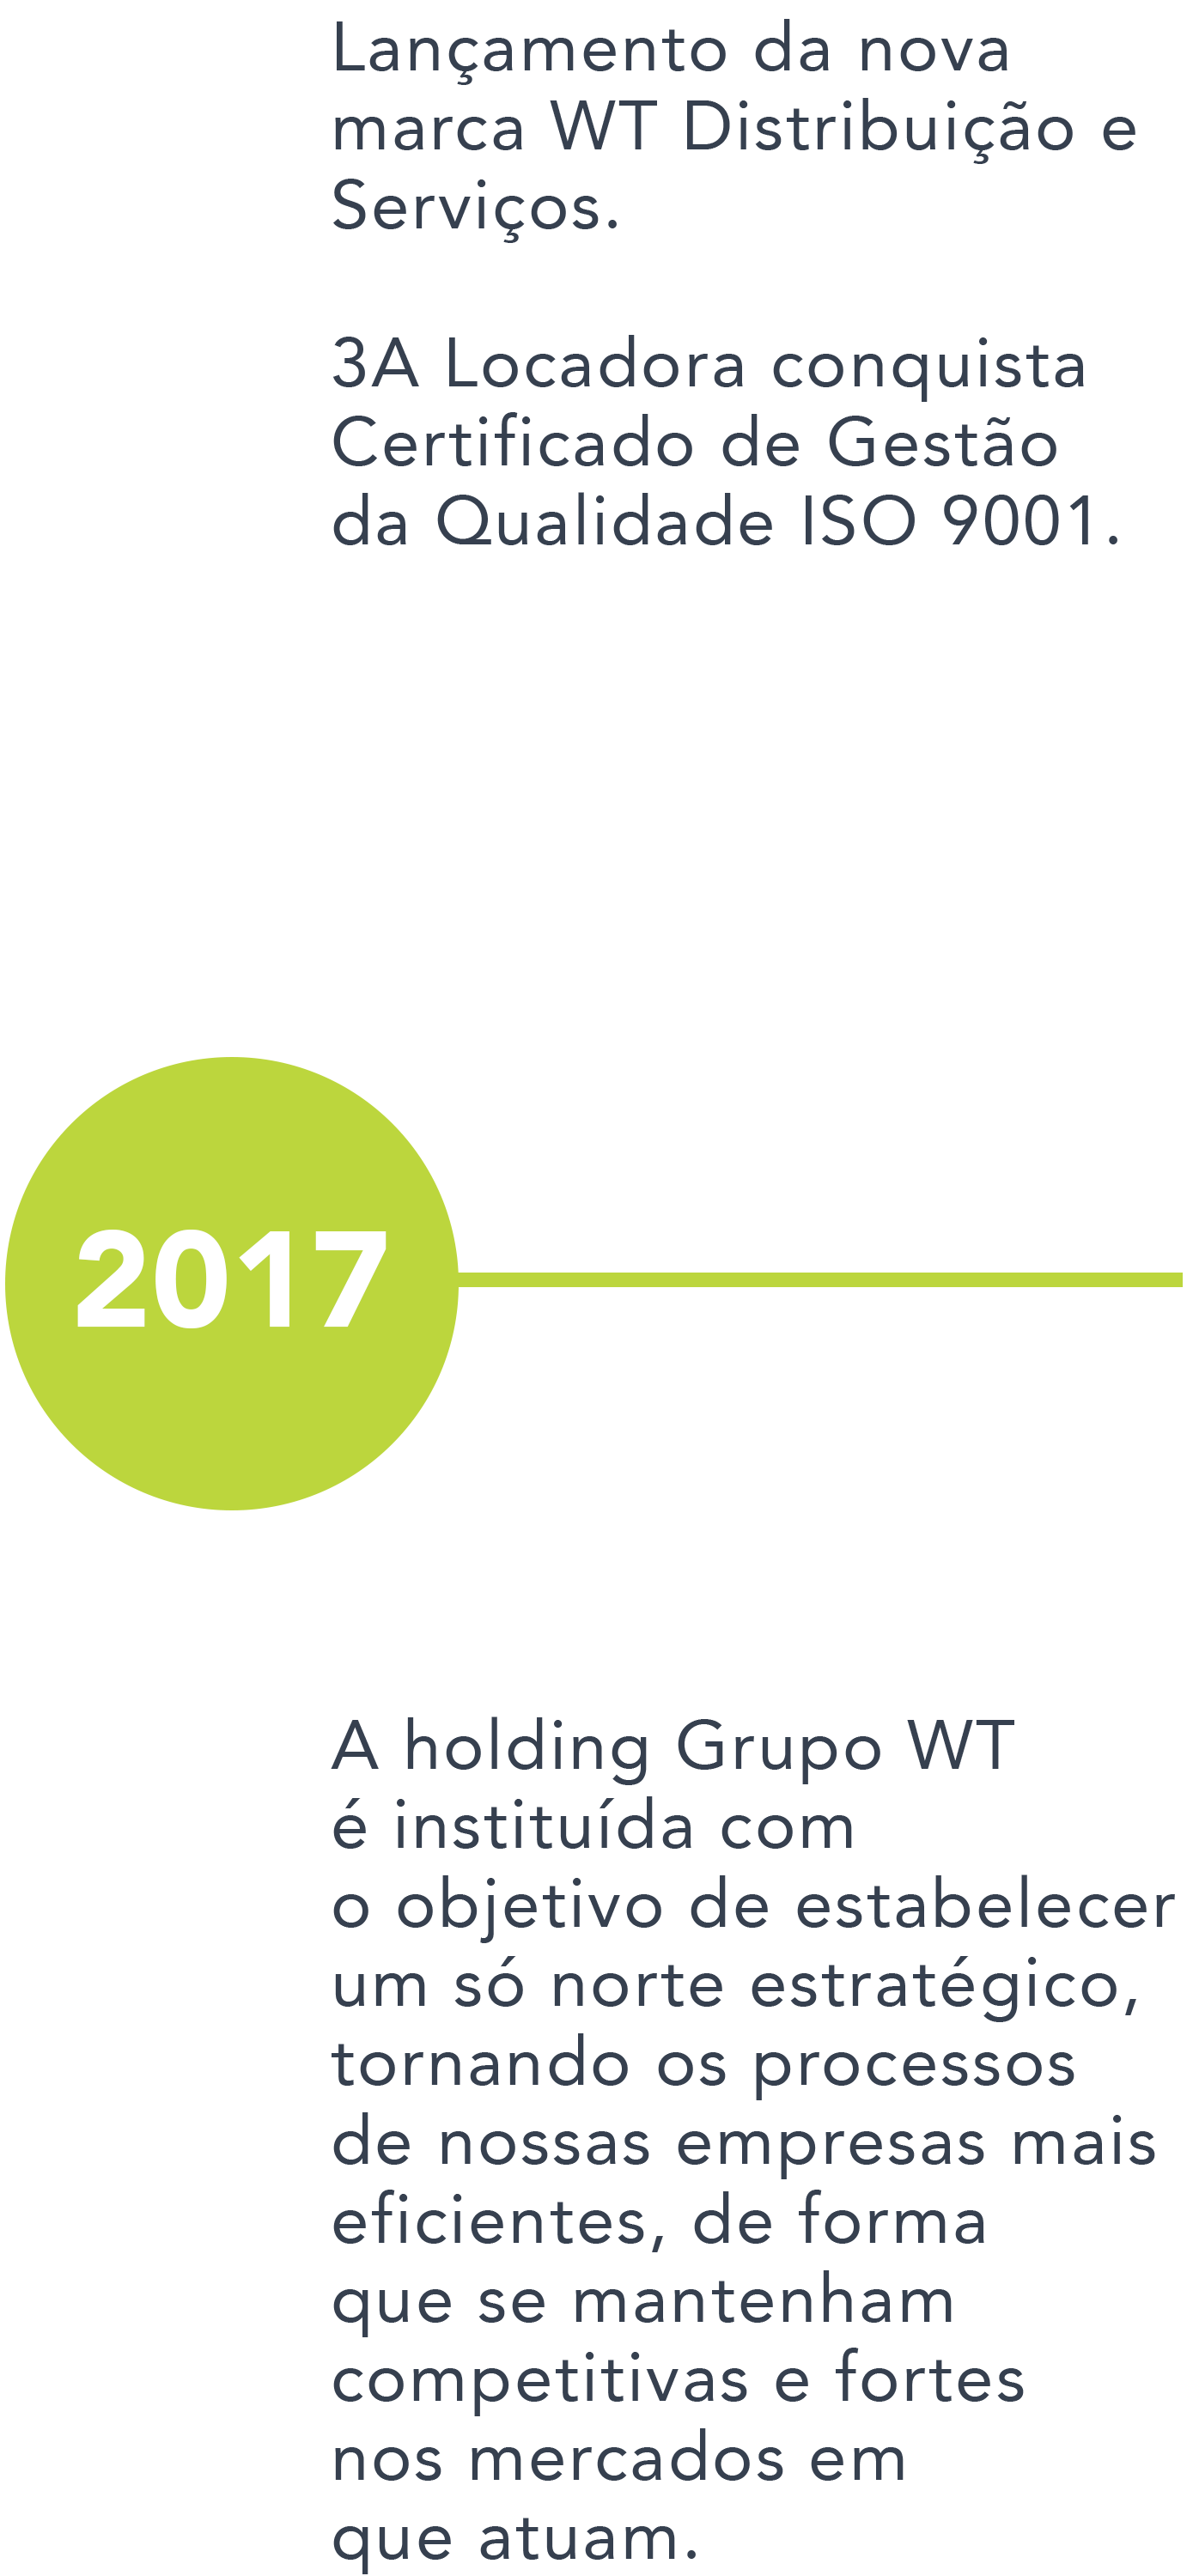 GrupoWT_Site_LinhaDoTempo_2017